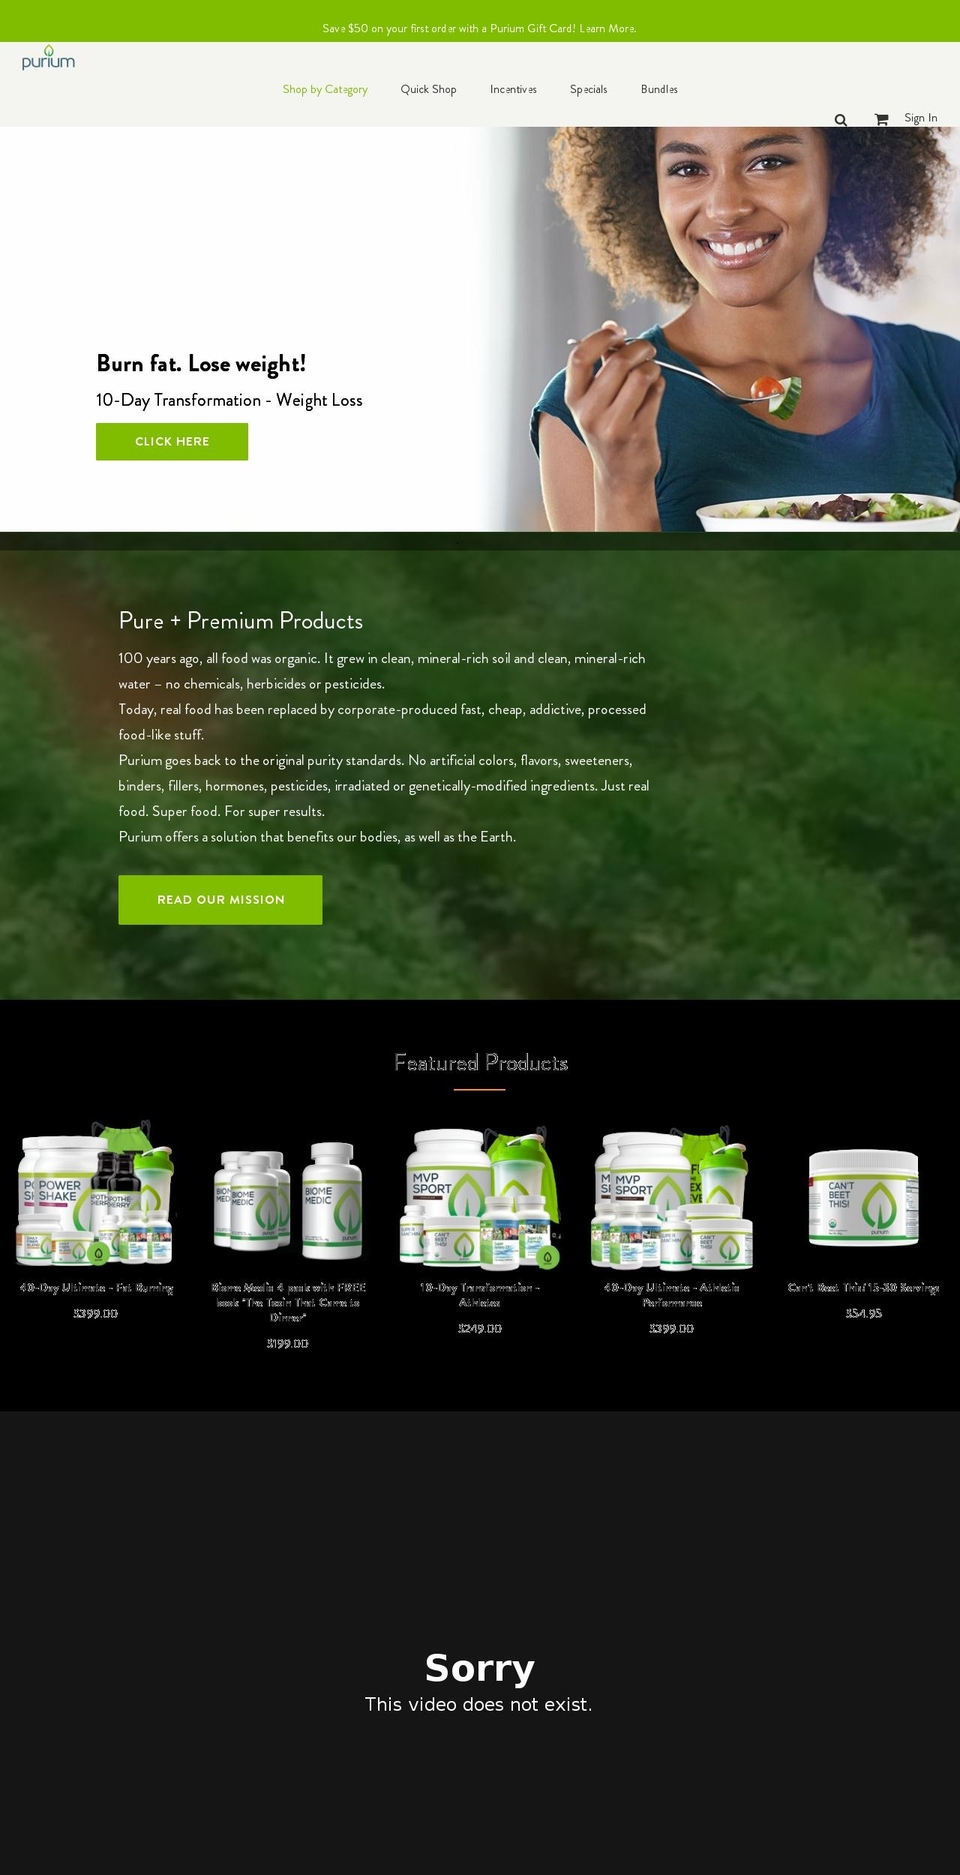 Production | BVA Shopify theme site example greenperks.com